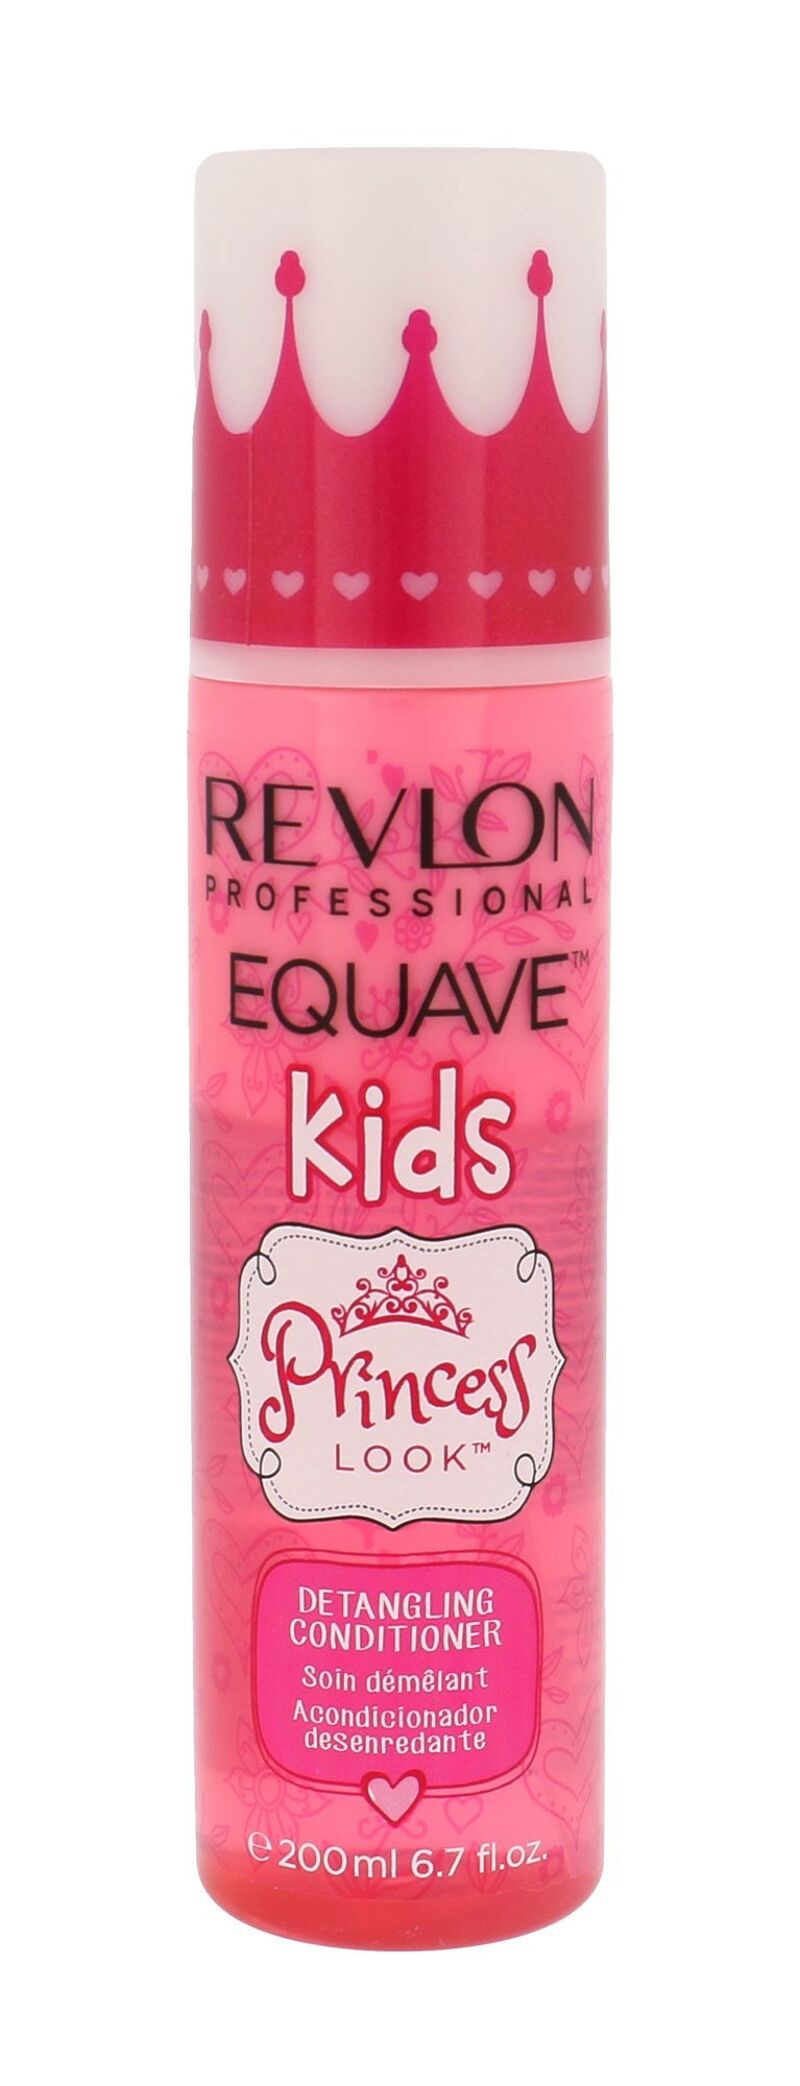 Revlon professional Equave nenuplaunamas plaukų kondicionierius 200 ml, Princess Look